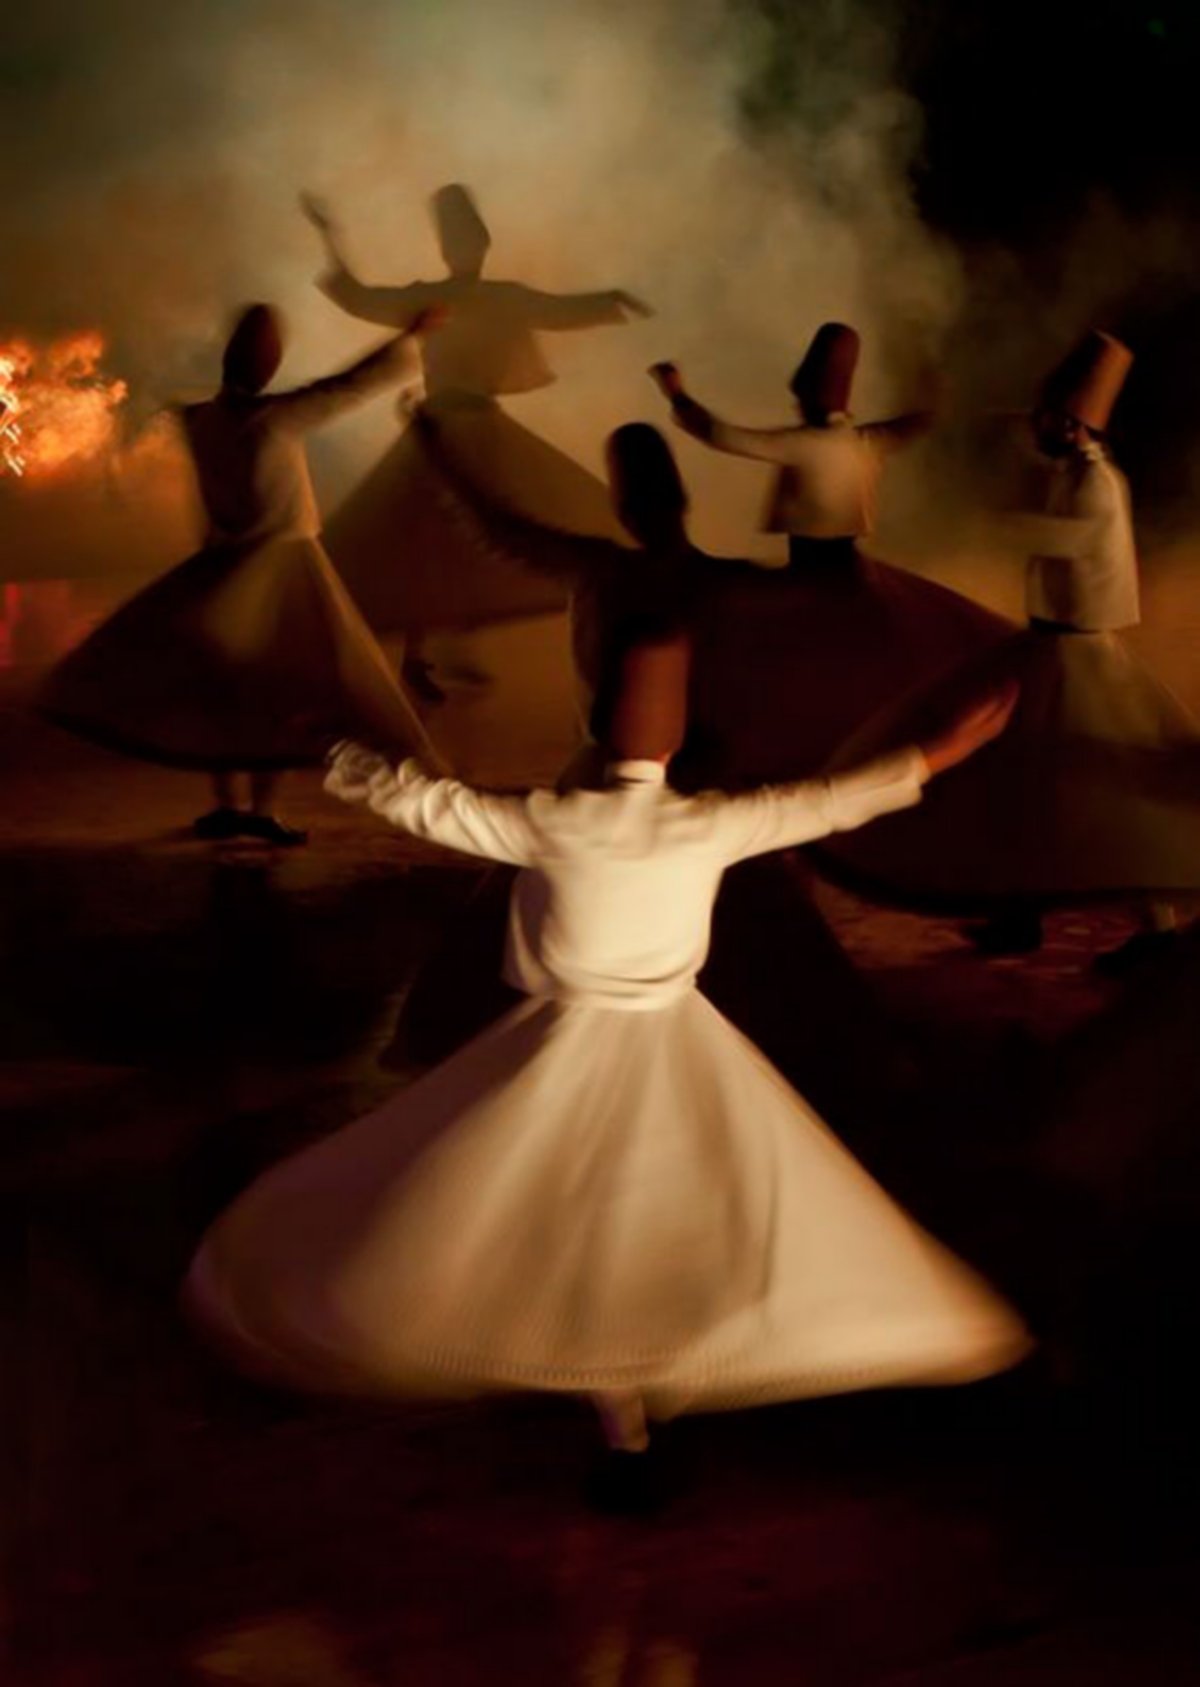 Sama, danse giratoire sacrée des derviches tourneurs soufis